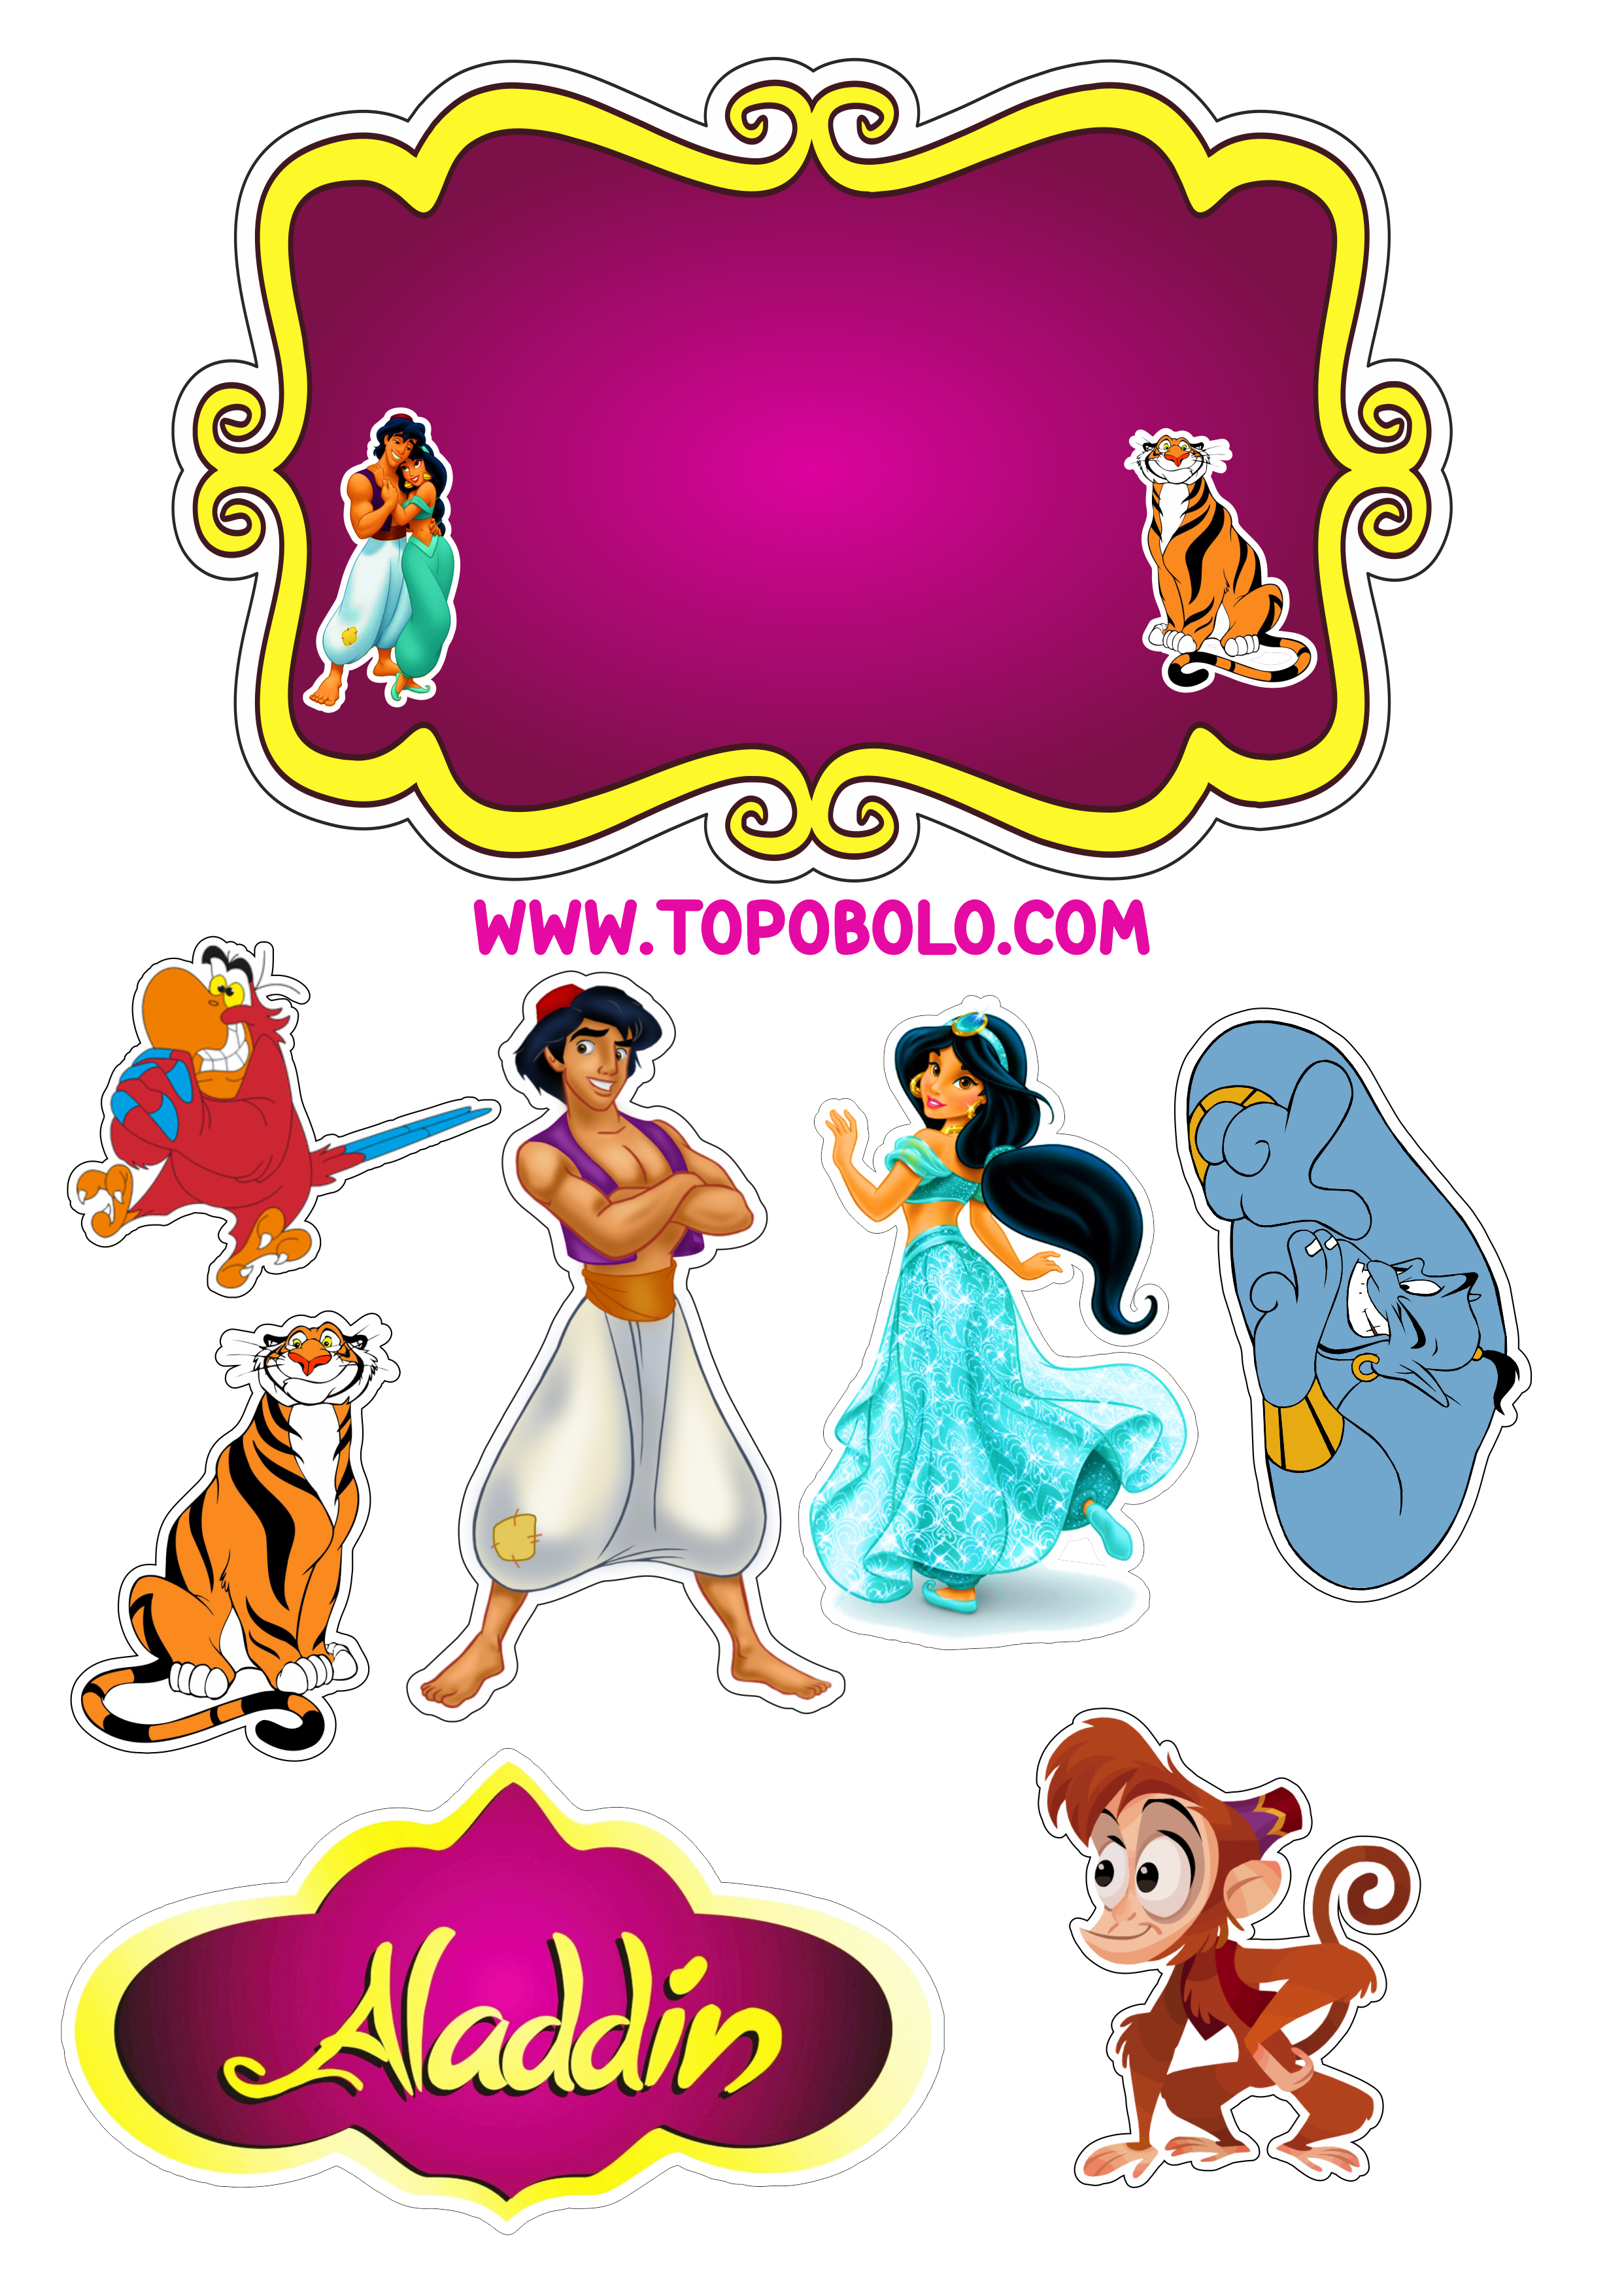 Aladdin e princesa Jasmine Disney topo de bolo festa de aniversário infantil Abu Iago Rajah desenho infantil artes gráficas design png